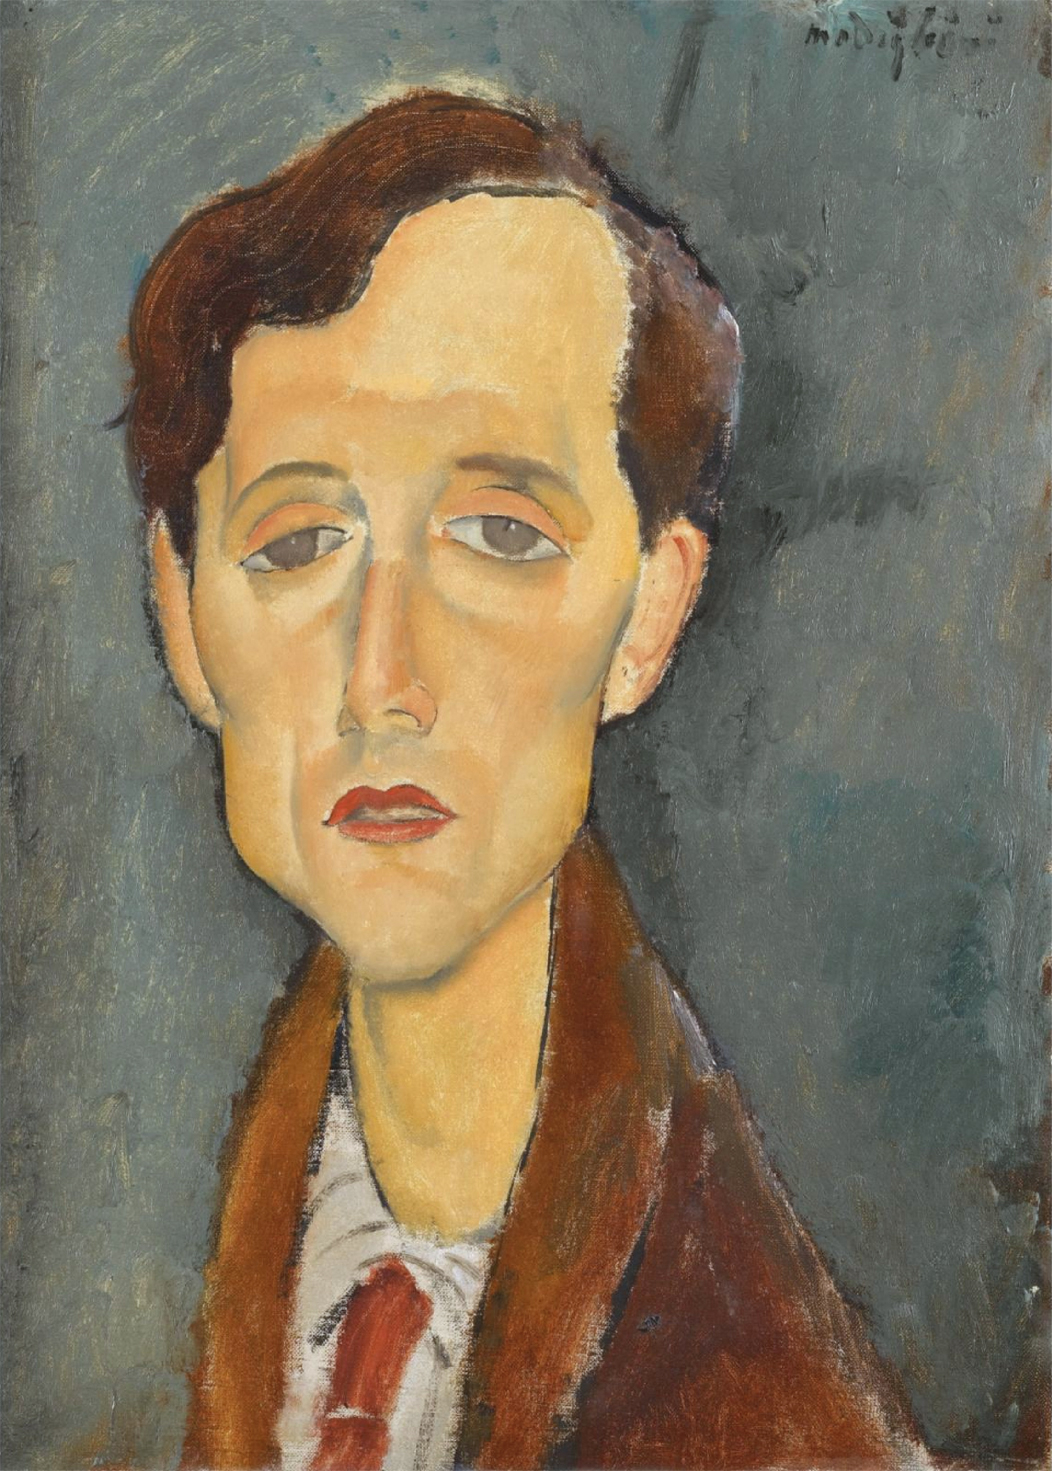 Frans Hellens by Amedeo Modigliani - 1919 - 46 x 34 cm 